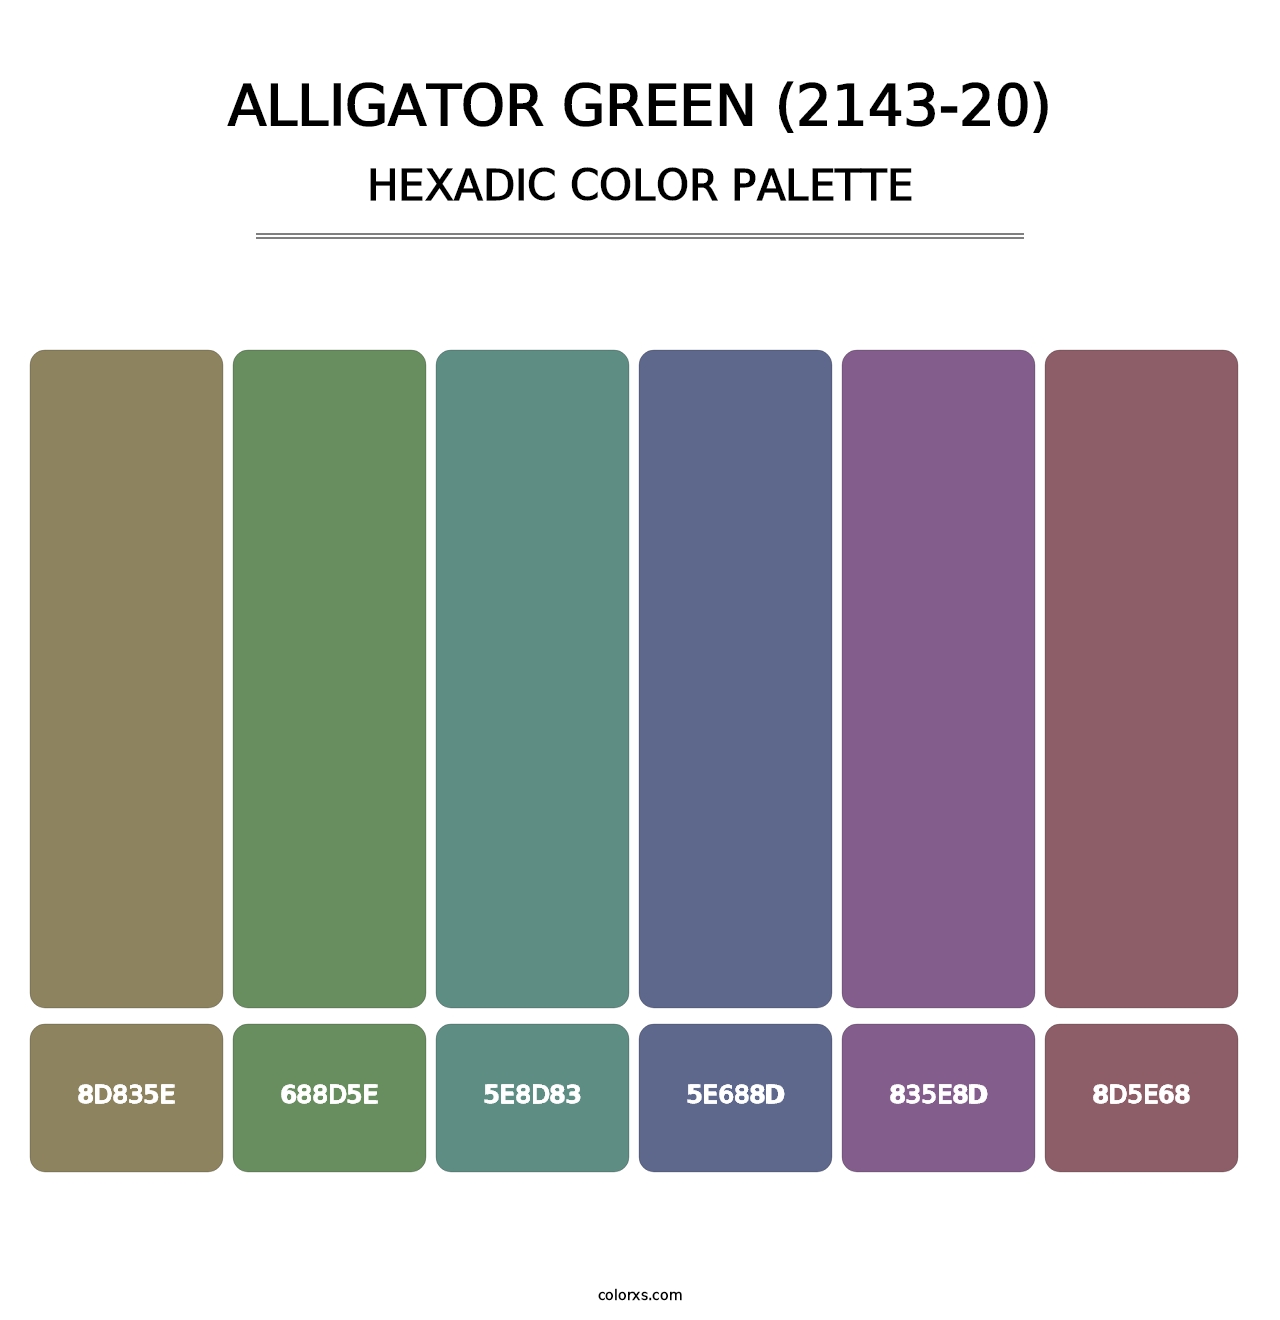 Alligator Green (2143-20) - Hexadic Color Palette